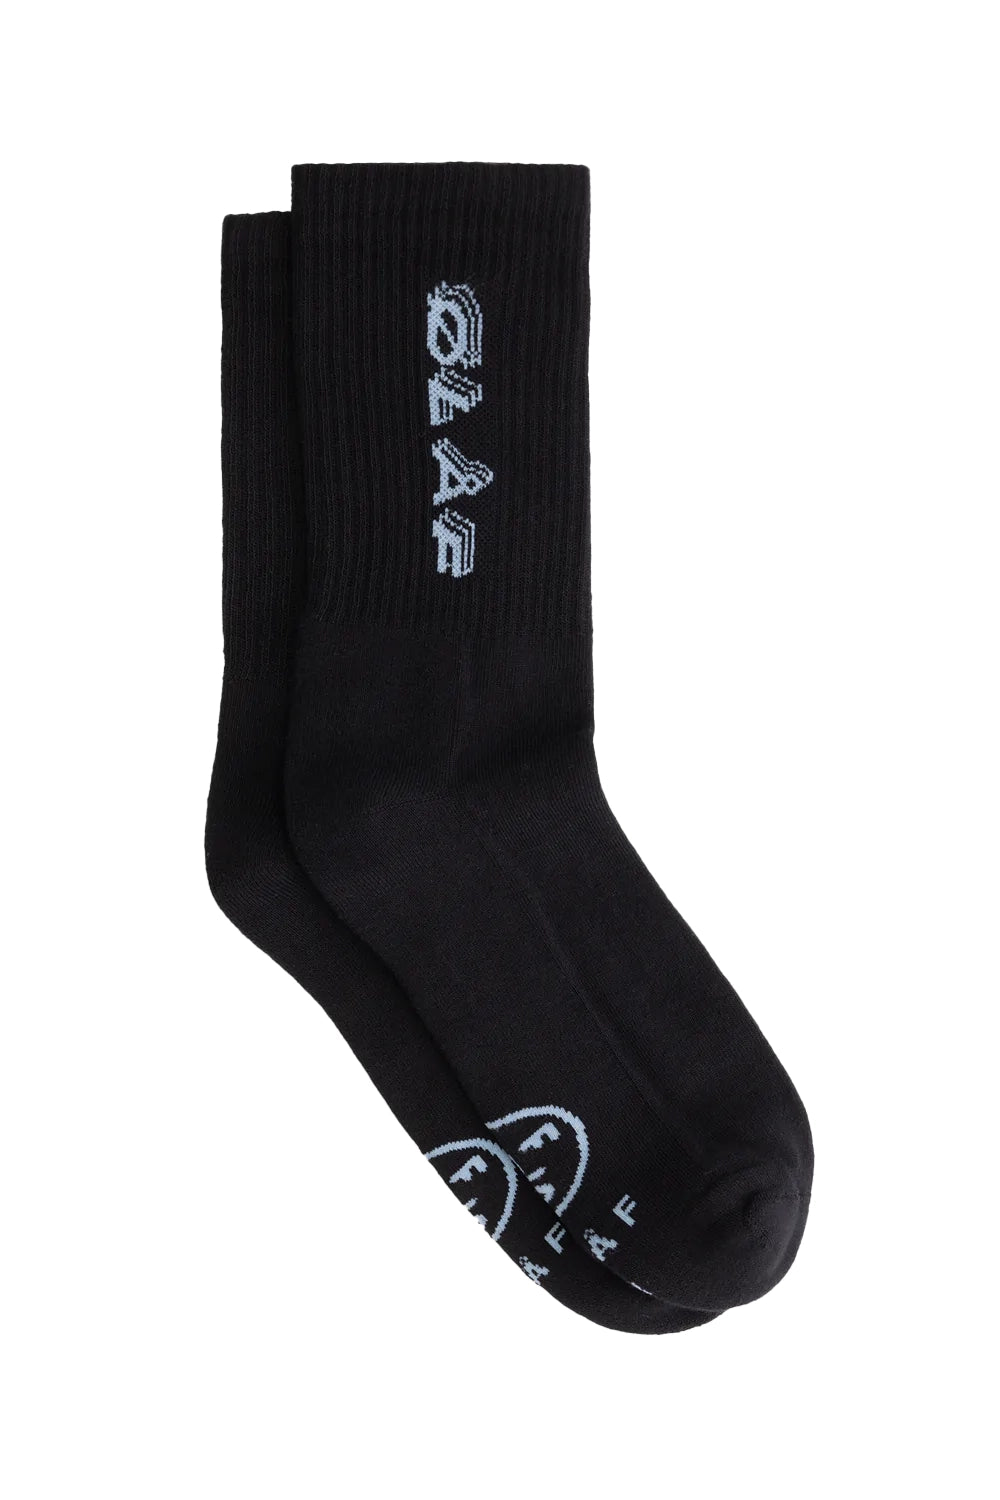 Olaf Triple Italic Socks, black